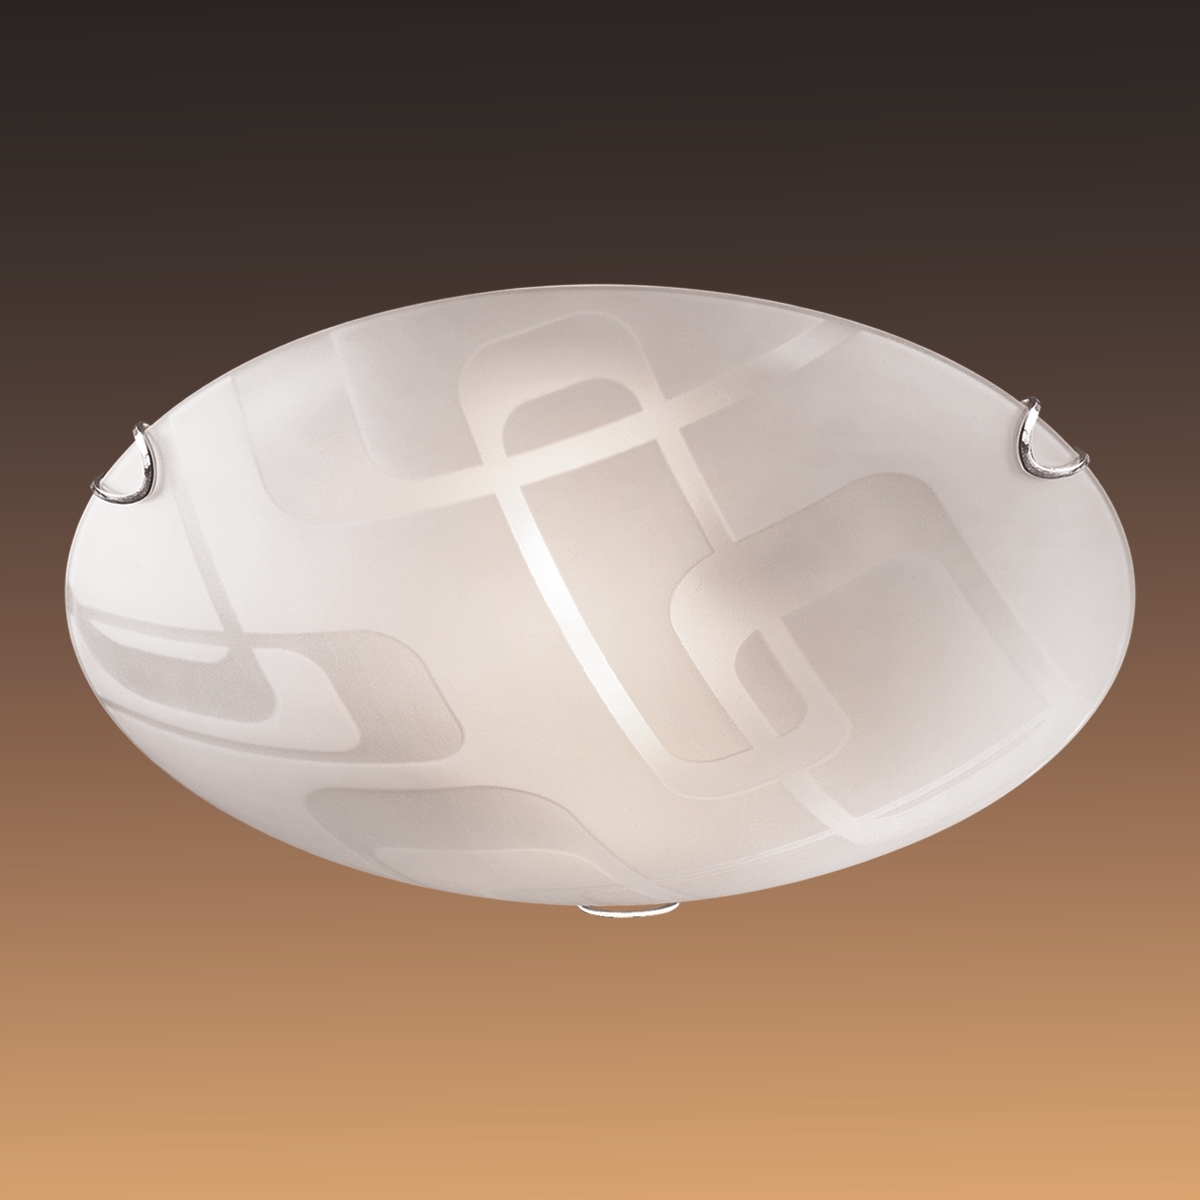 Потолочный светильник Sonex Halo 257, 2xE27x100W, хром, белый, металл, стекло - фото 4